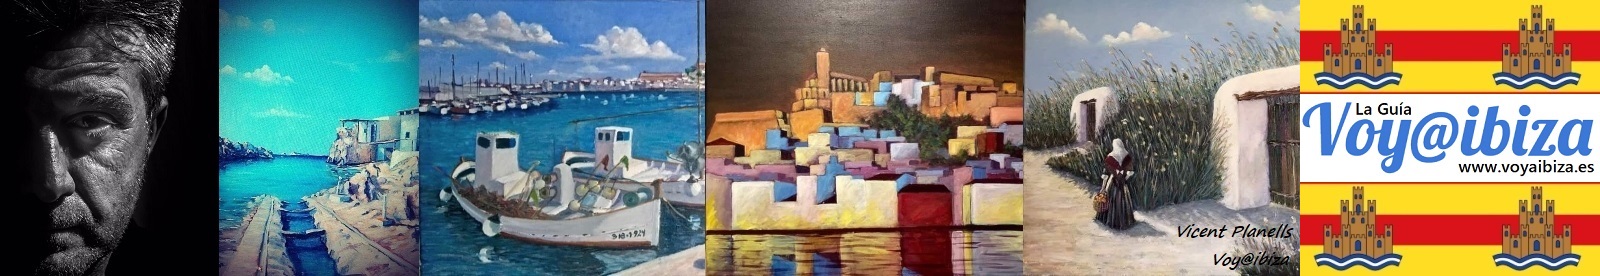 Galería de Fotos de Ibiza: Pinturas Vicent Planells (V)